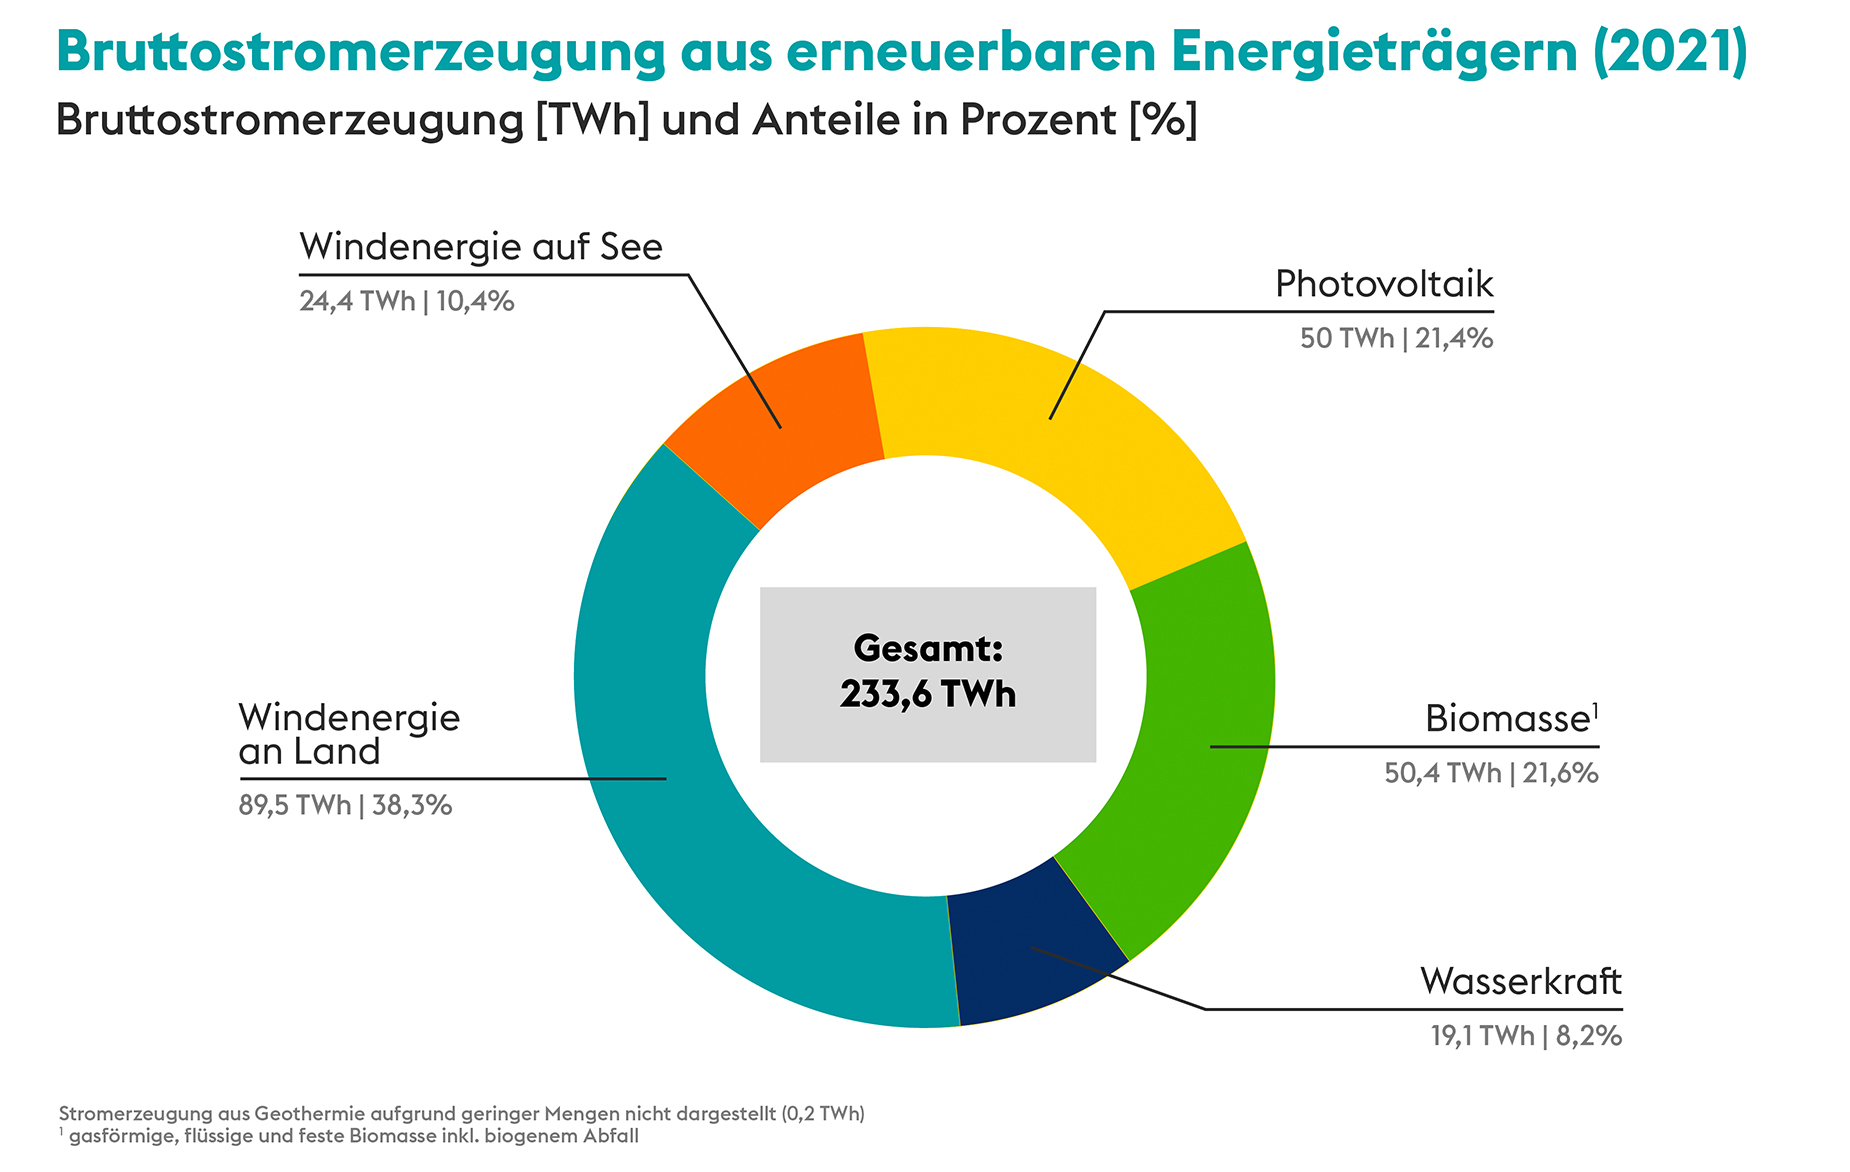 Riesenbatterien für die Energiewende: Die 5 größten Energiespeicher der Welt